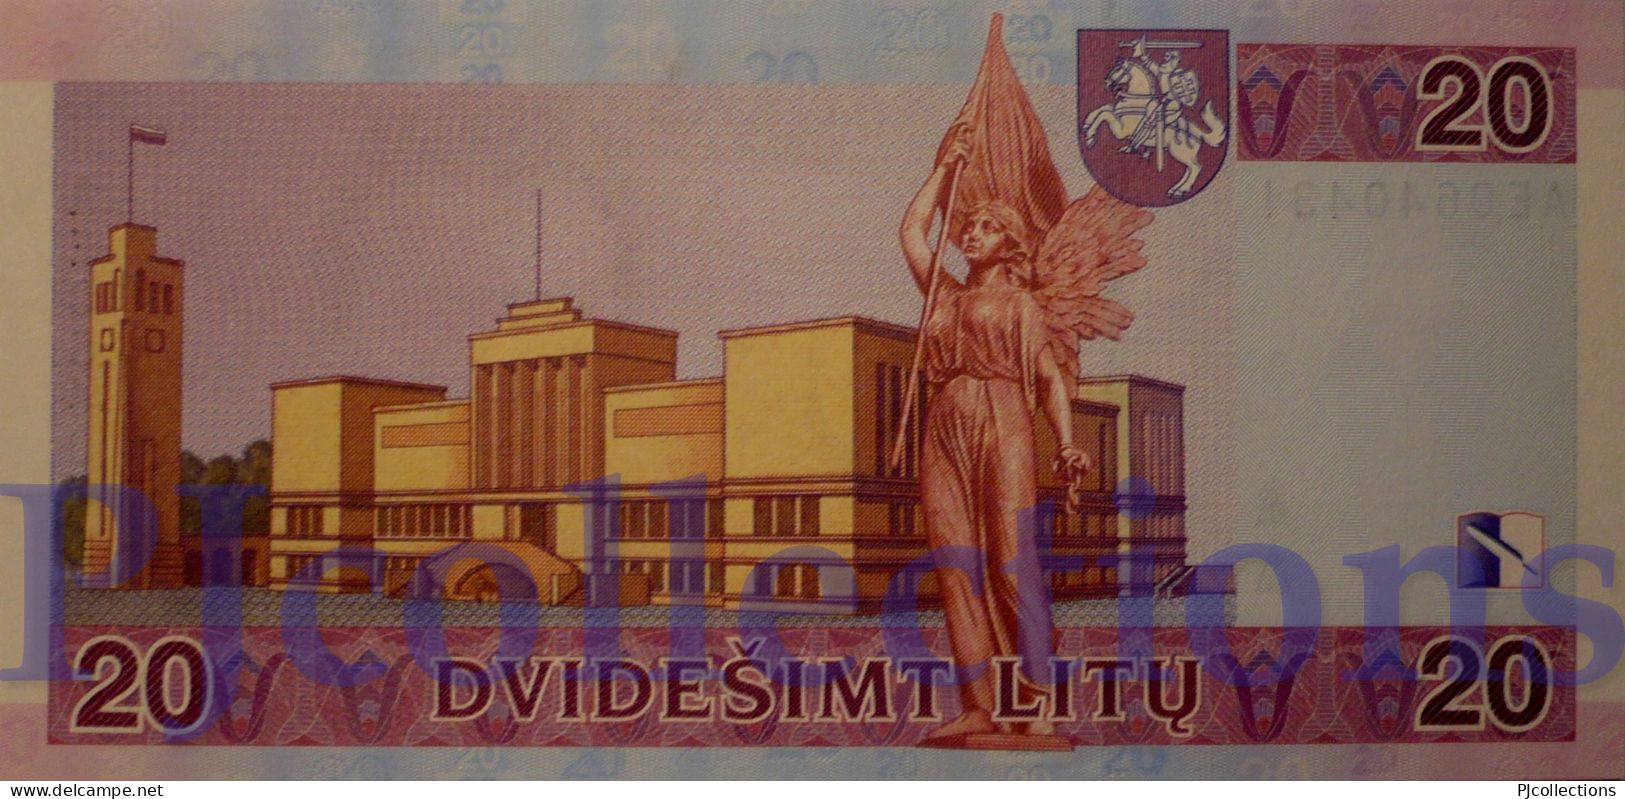 LITHUANIA 20 LITU 2001 PICK 66 UNC - Lituanie